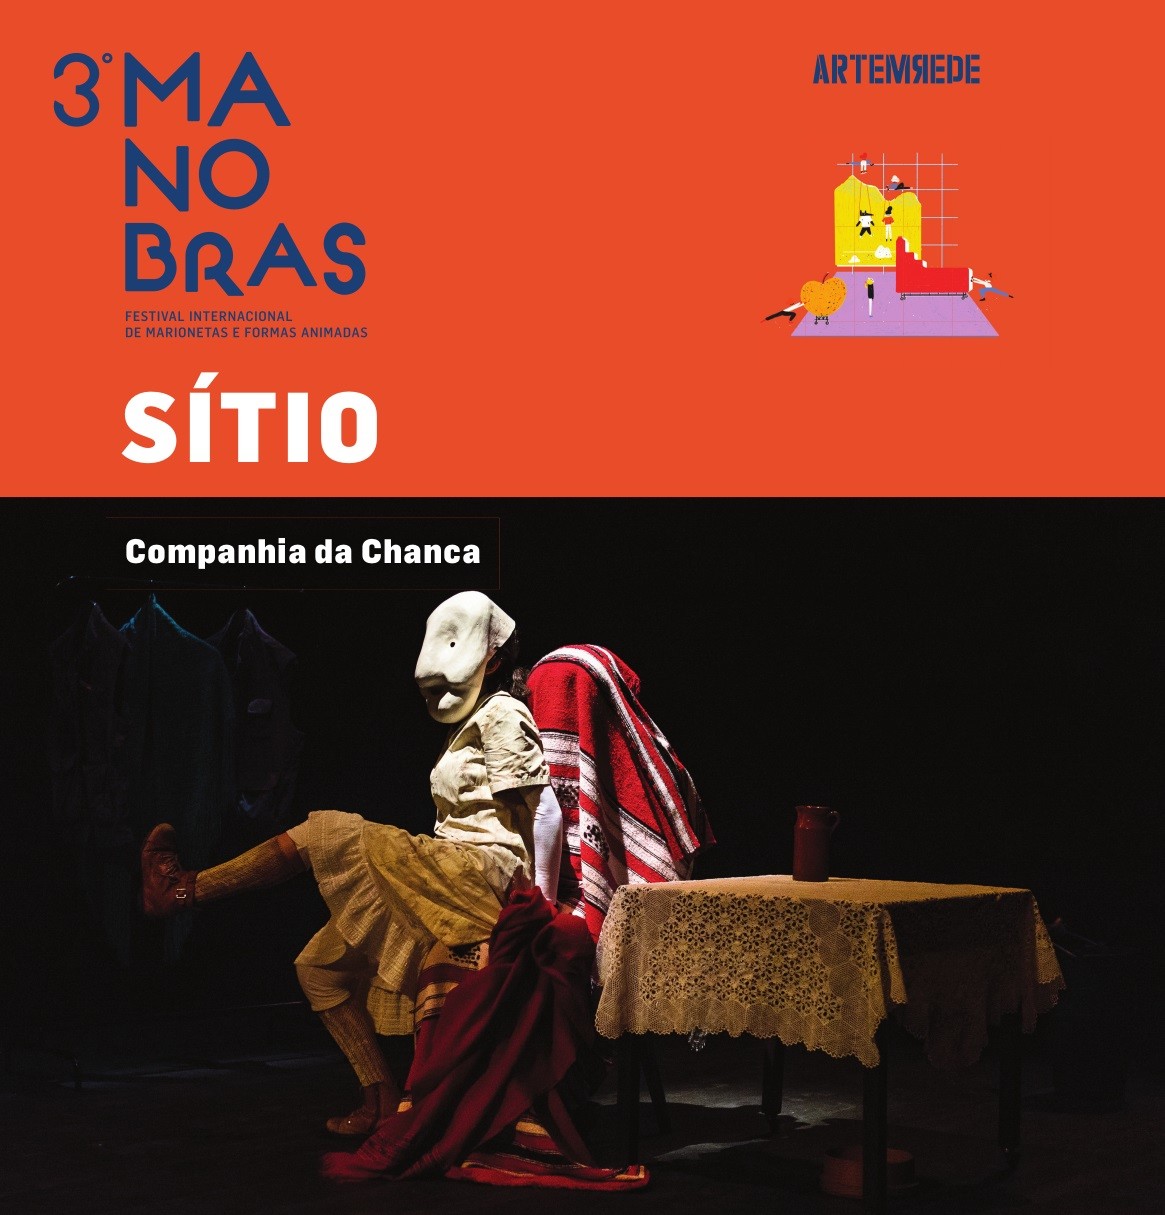 Festival Internacional de Marionetes e Formas Animadas: “Sítio” no Cinteatro São João